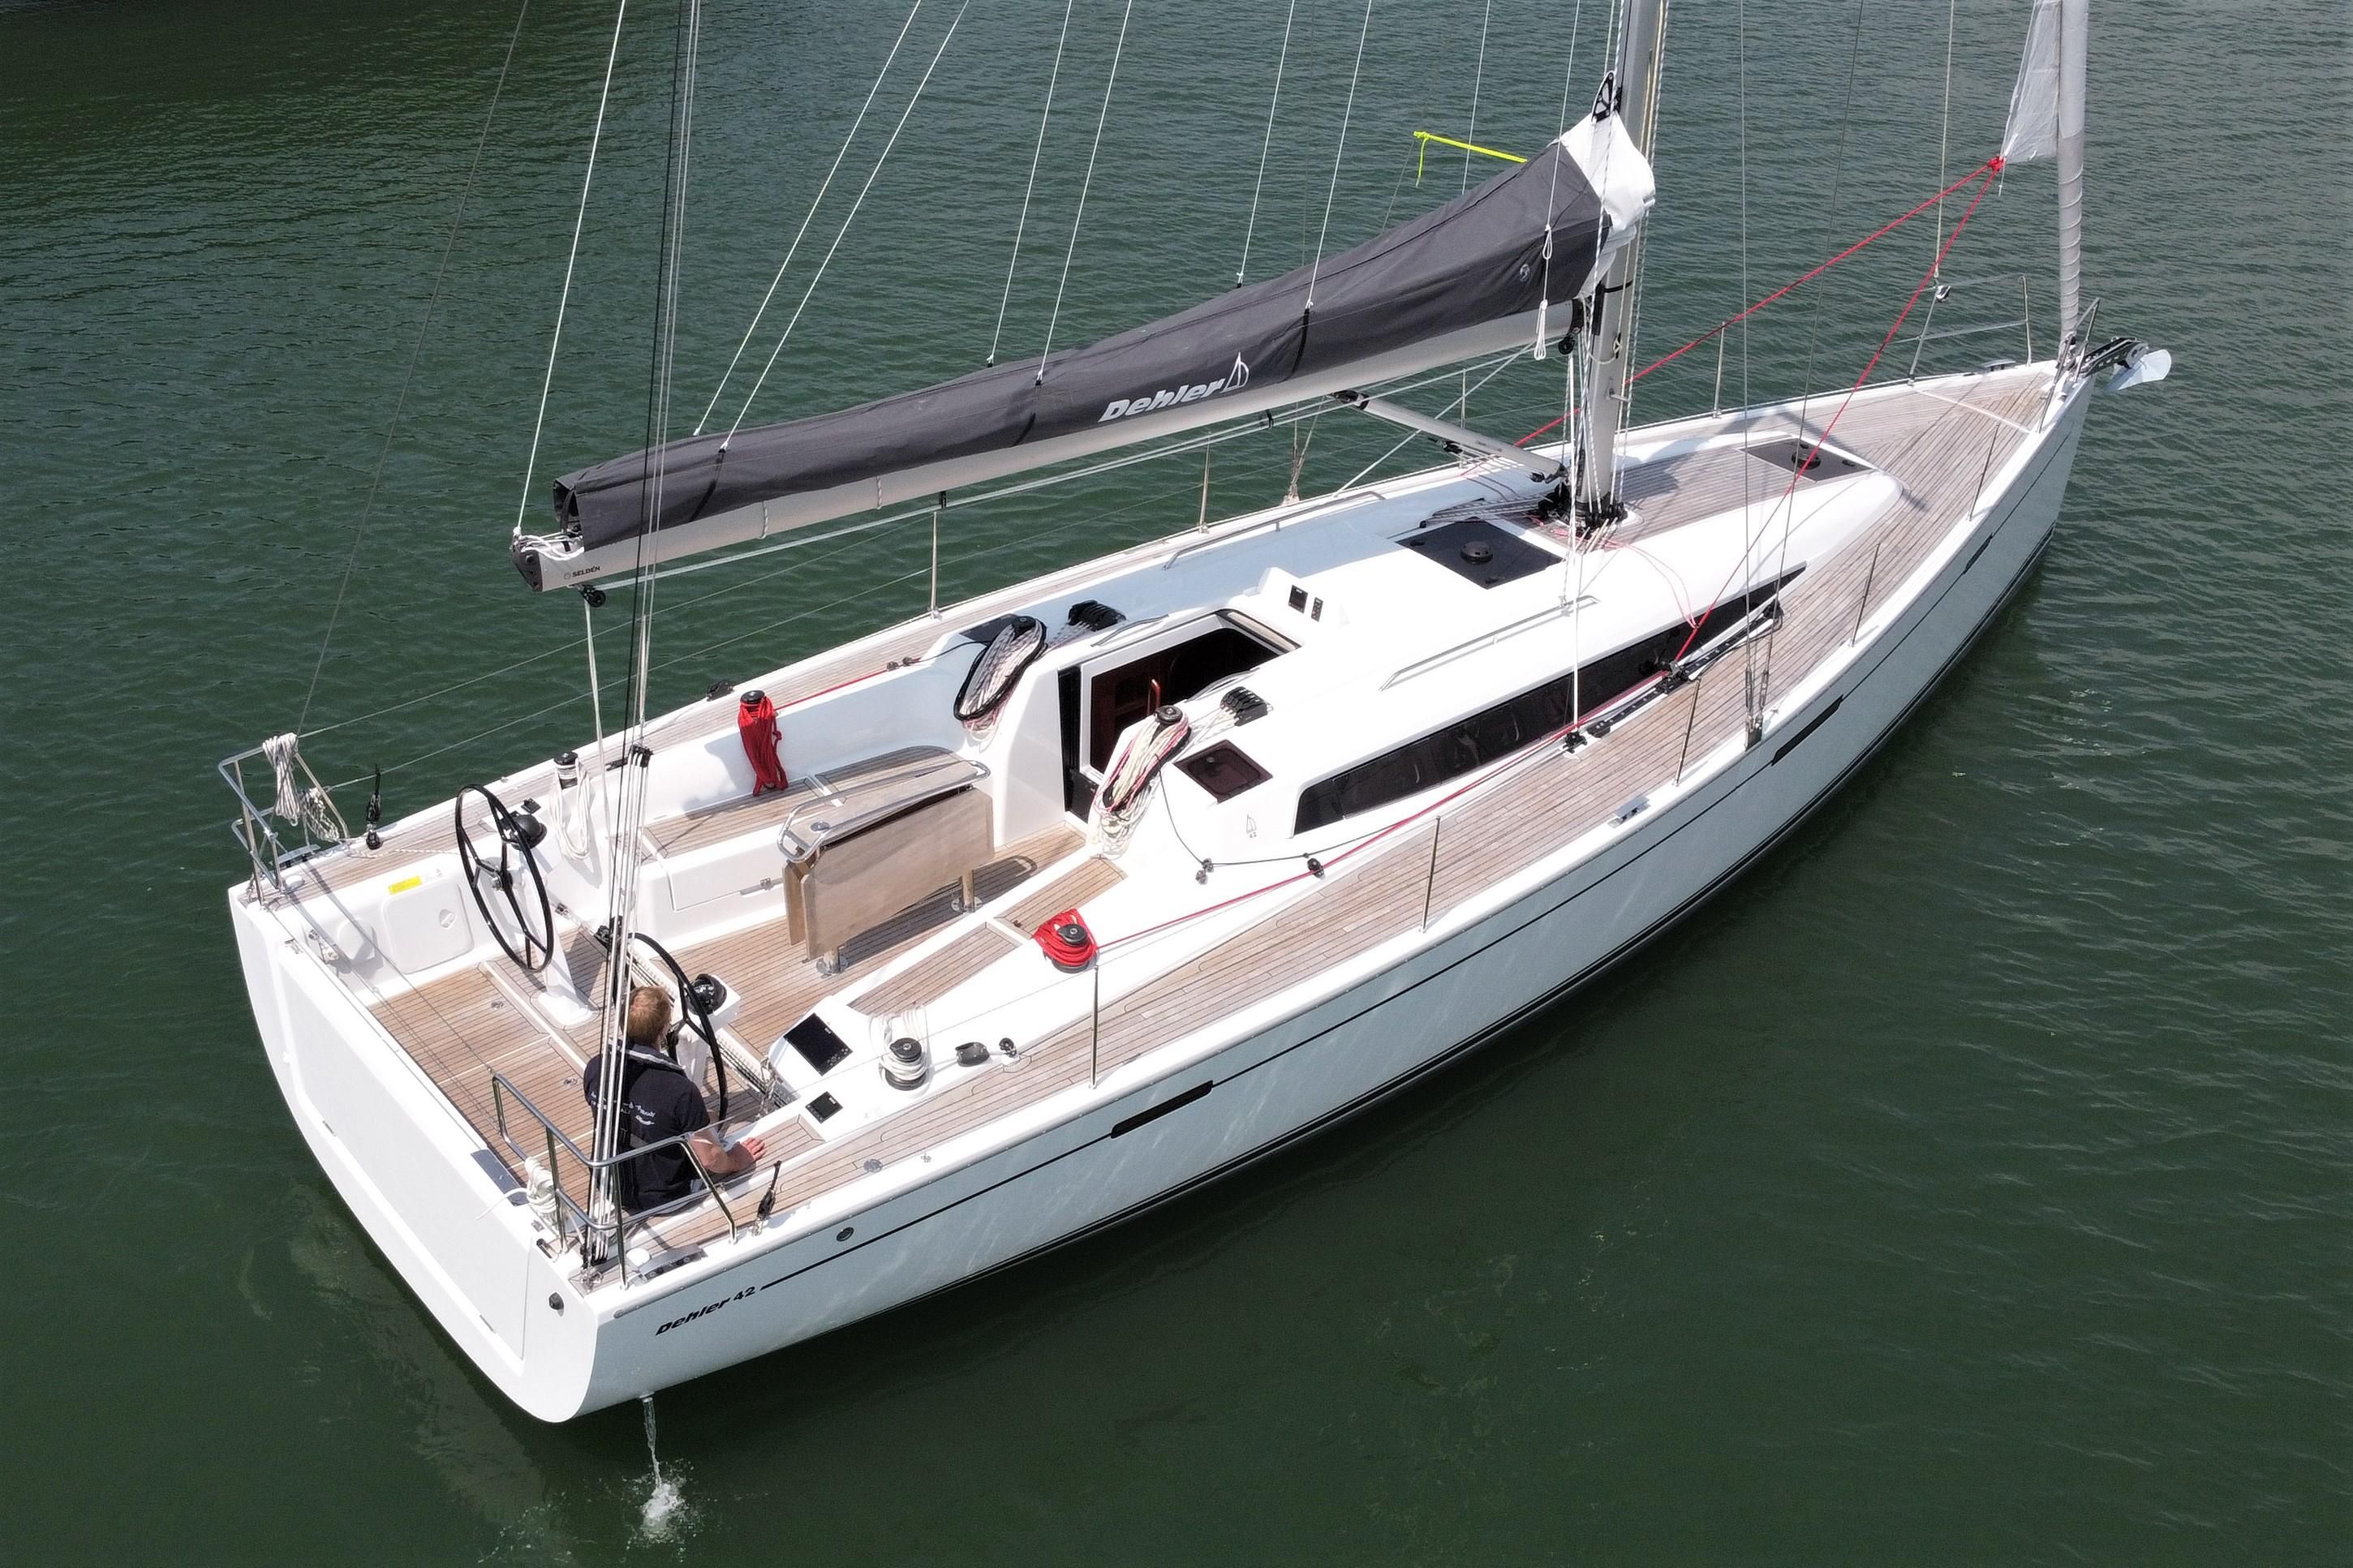 dehler yacht for sale uk